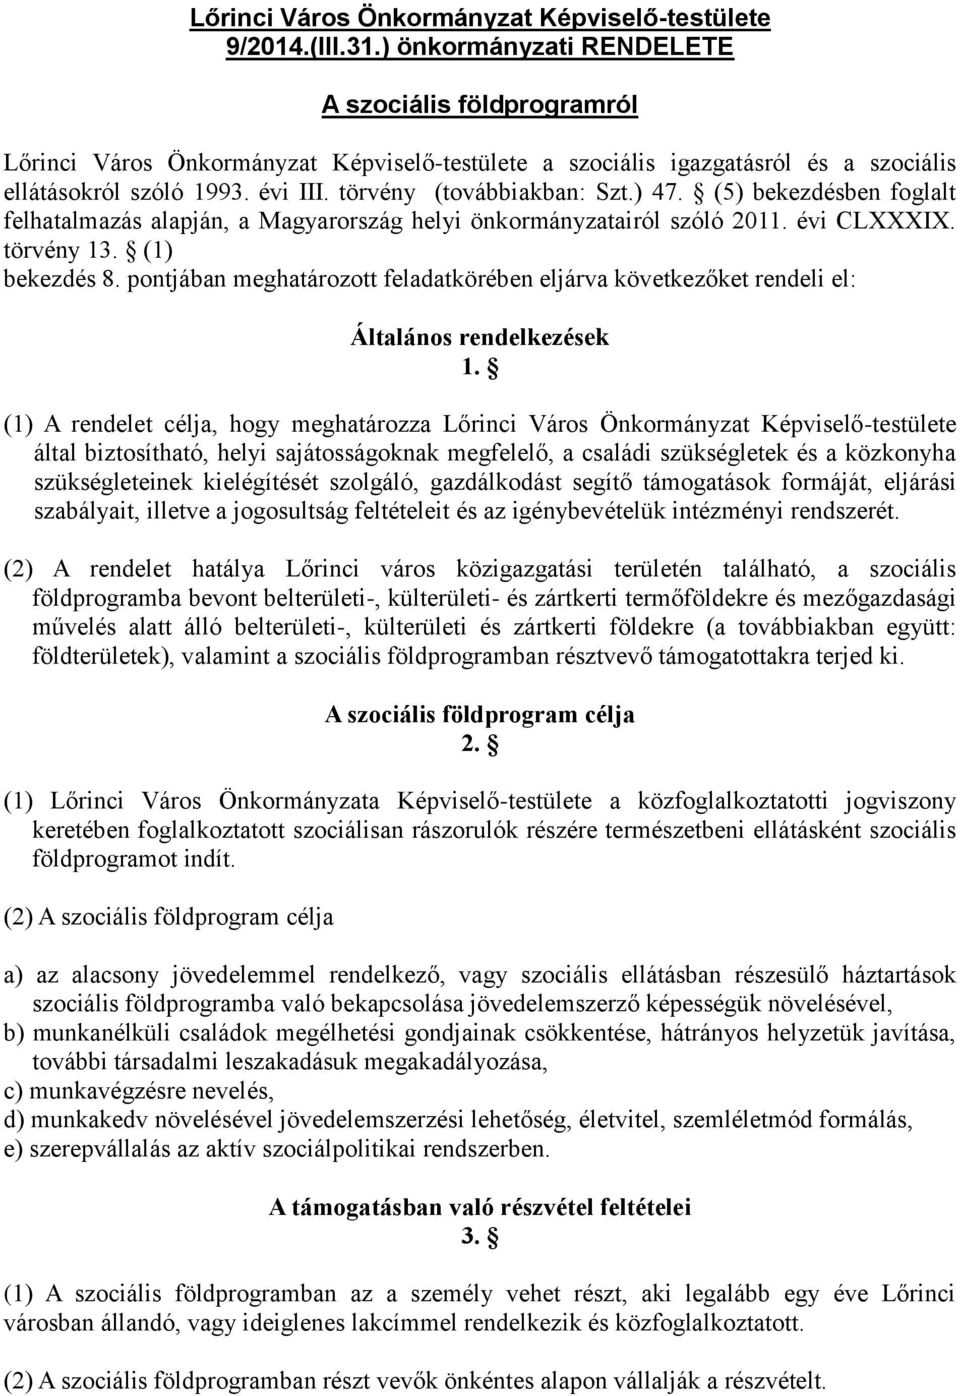 törvény (továbbiakban: Szt.) 47. (5) bekezdésben foglalt felhatalmazás alapján, a Magyarország helyi önkormányzatairól szóló 2011. évi CLXXXIX. törvény 13. (1) bekezdés 8.